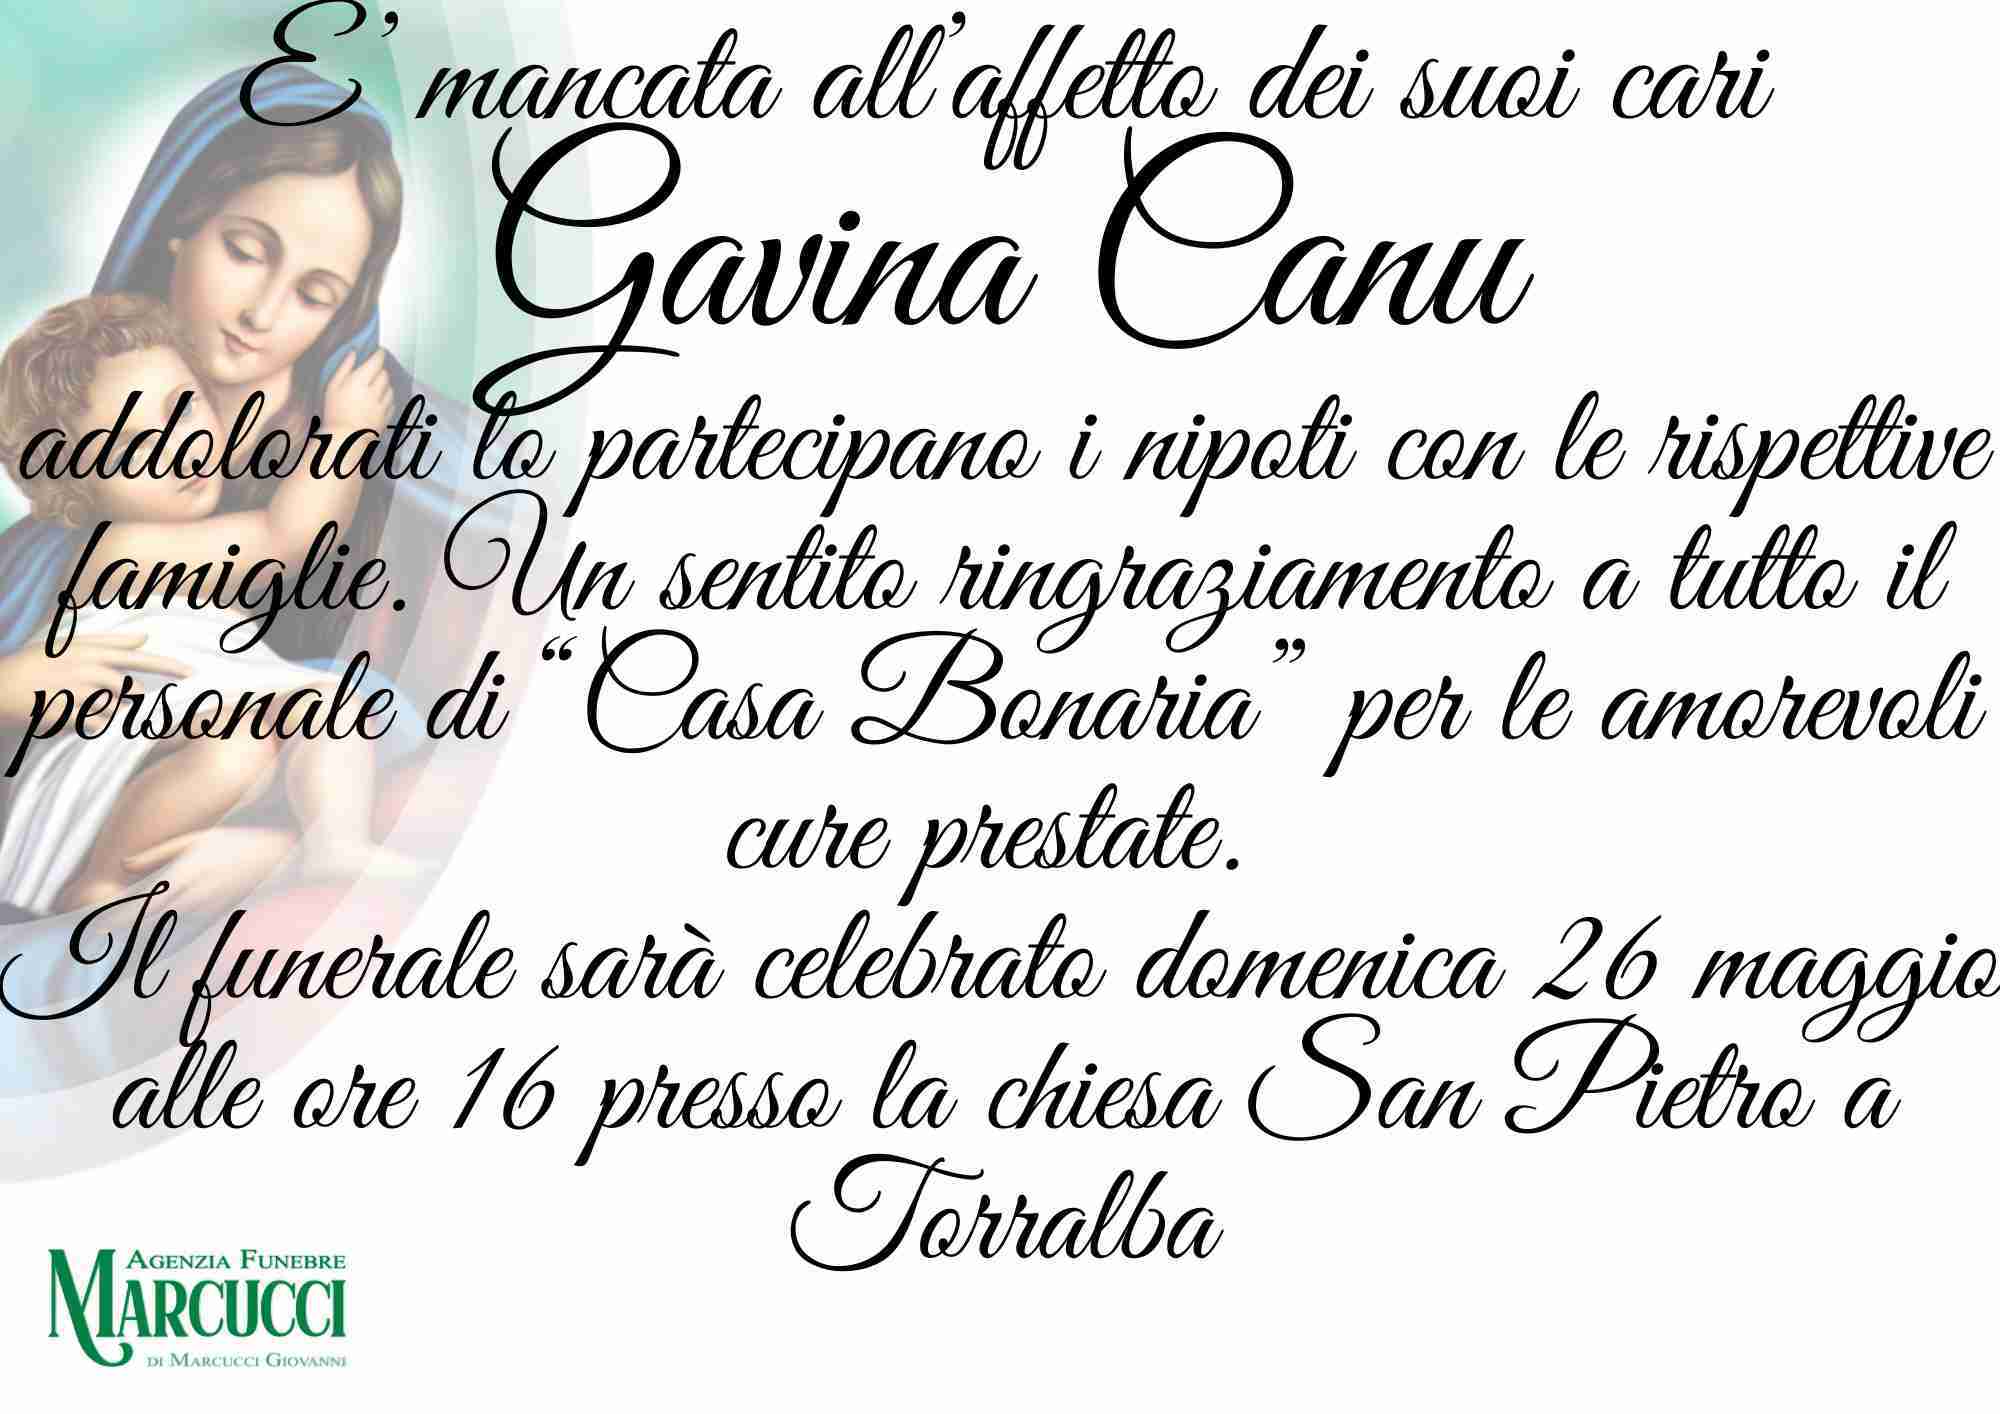 Gavina Canu